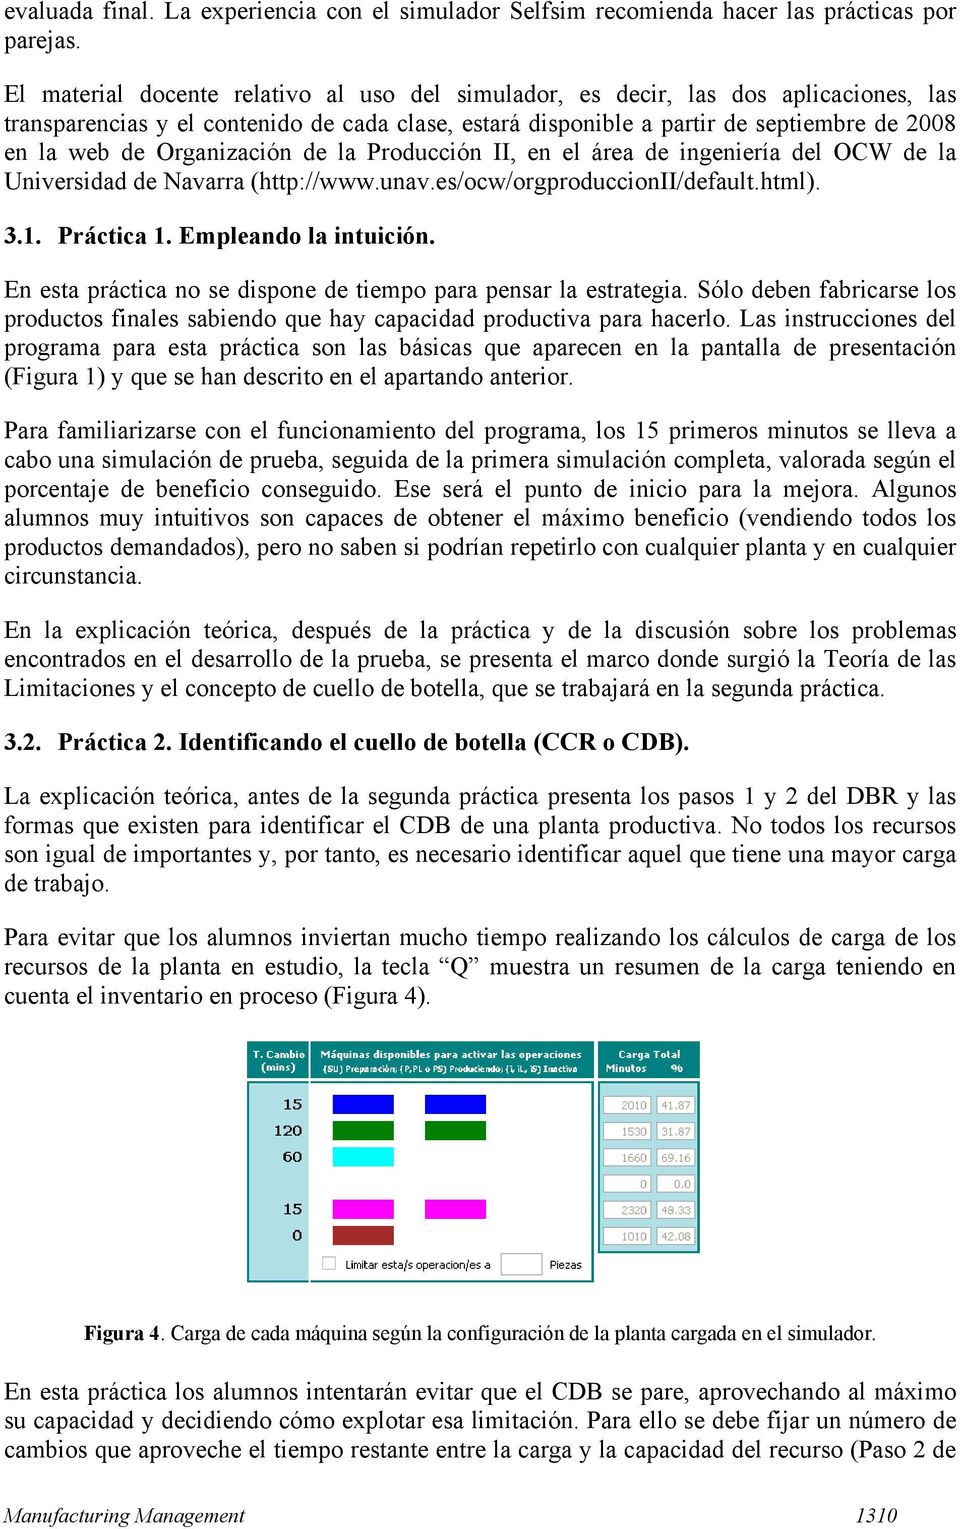 Organización de la Producción II, en el área de ingeniería del OCW de la Universidad de Navarra (http://www.unav.es/ocw/orgproduccionii/default.html). 3.1. Práctica 1. Empleando la intuición.